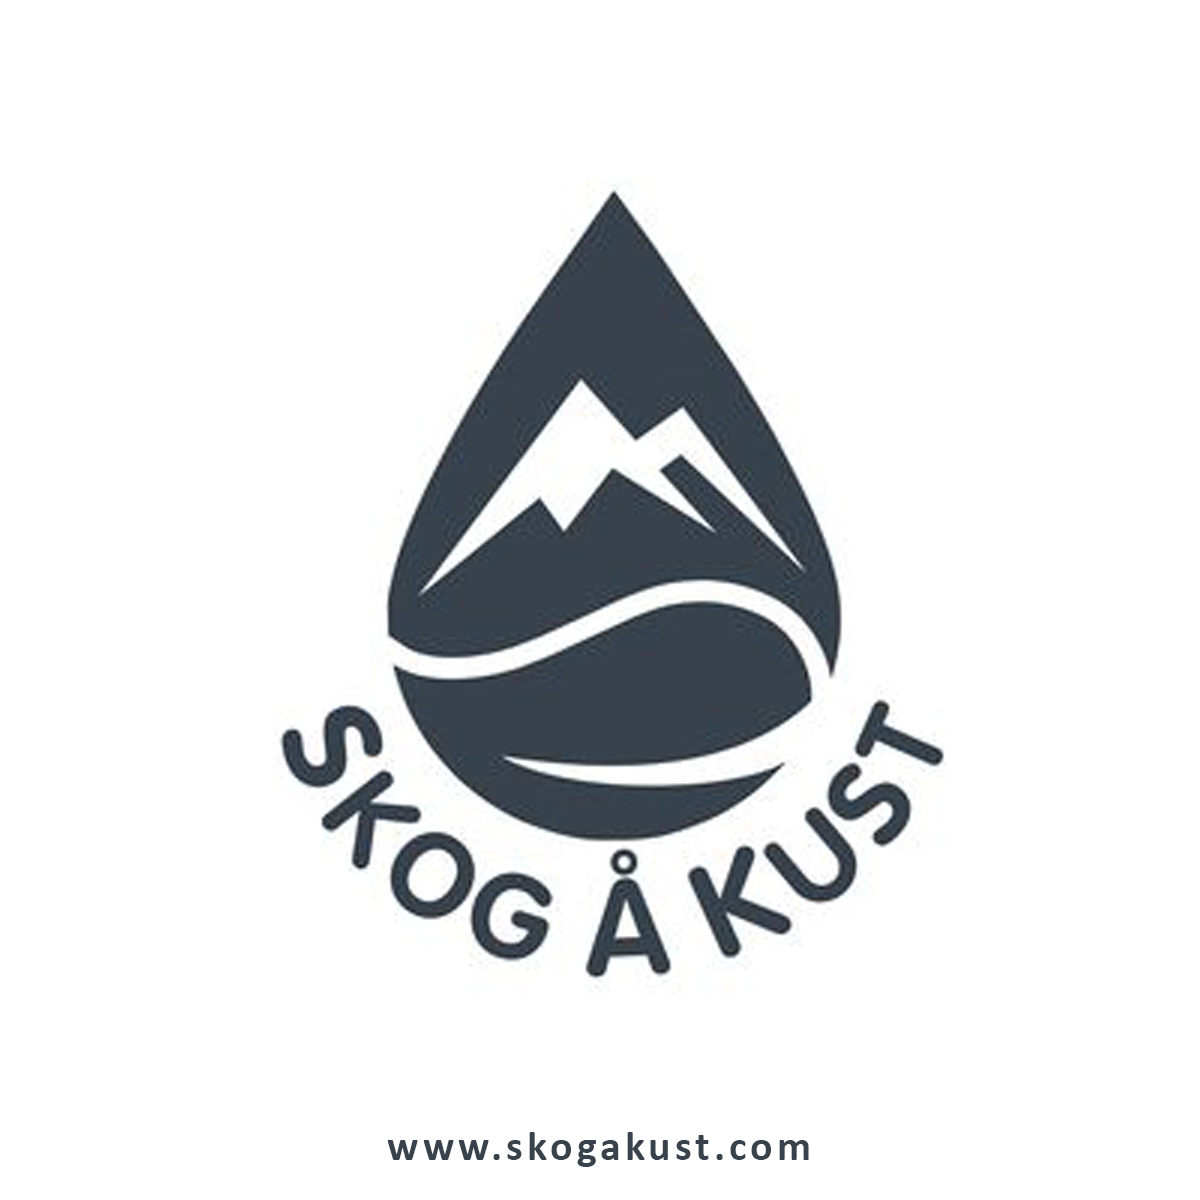 Waterproof Dry Bags  Skog  Kust - Pennsylvania - Philadelphia ID1546838